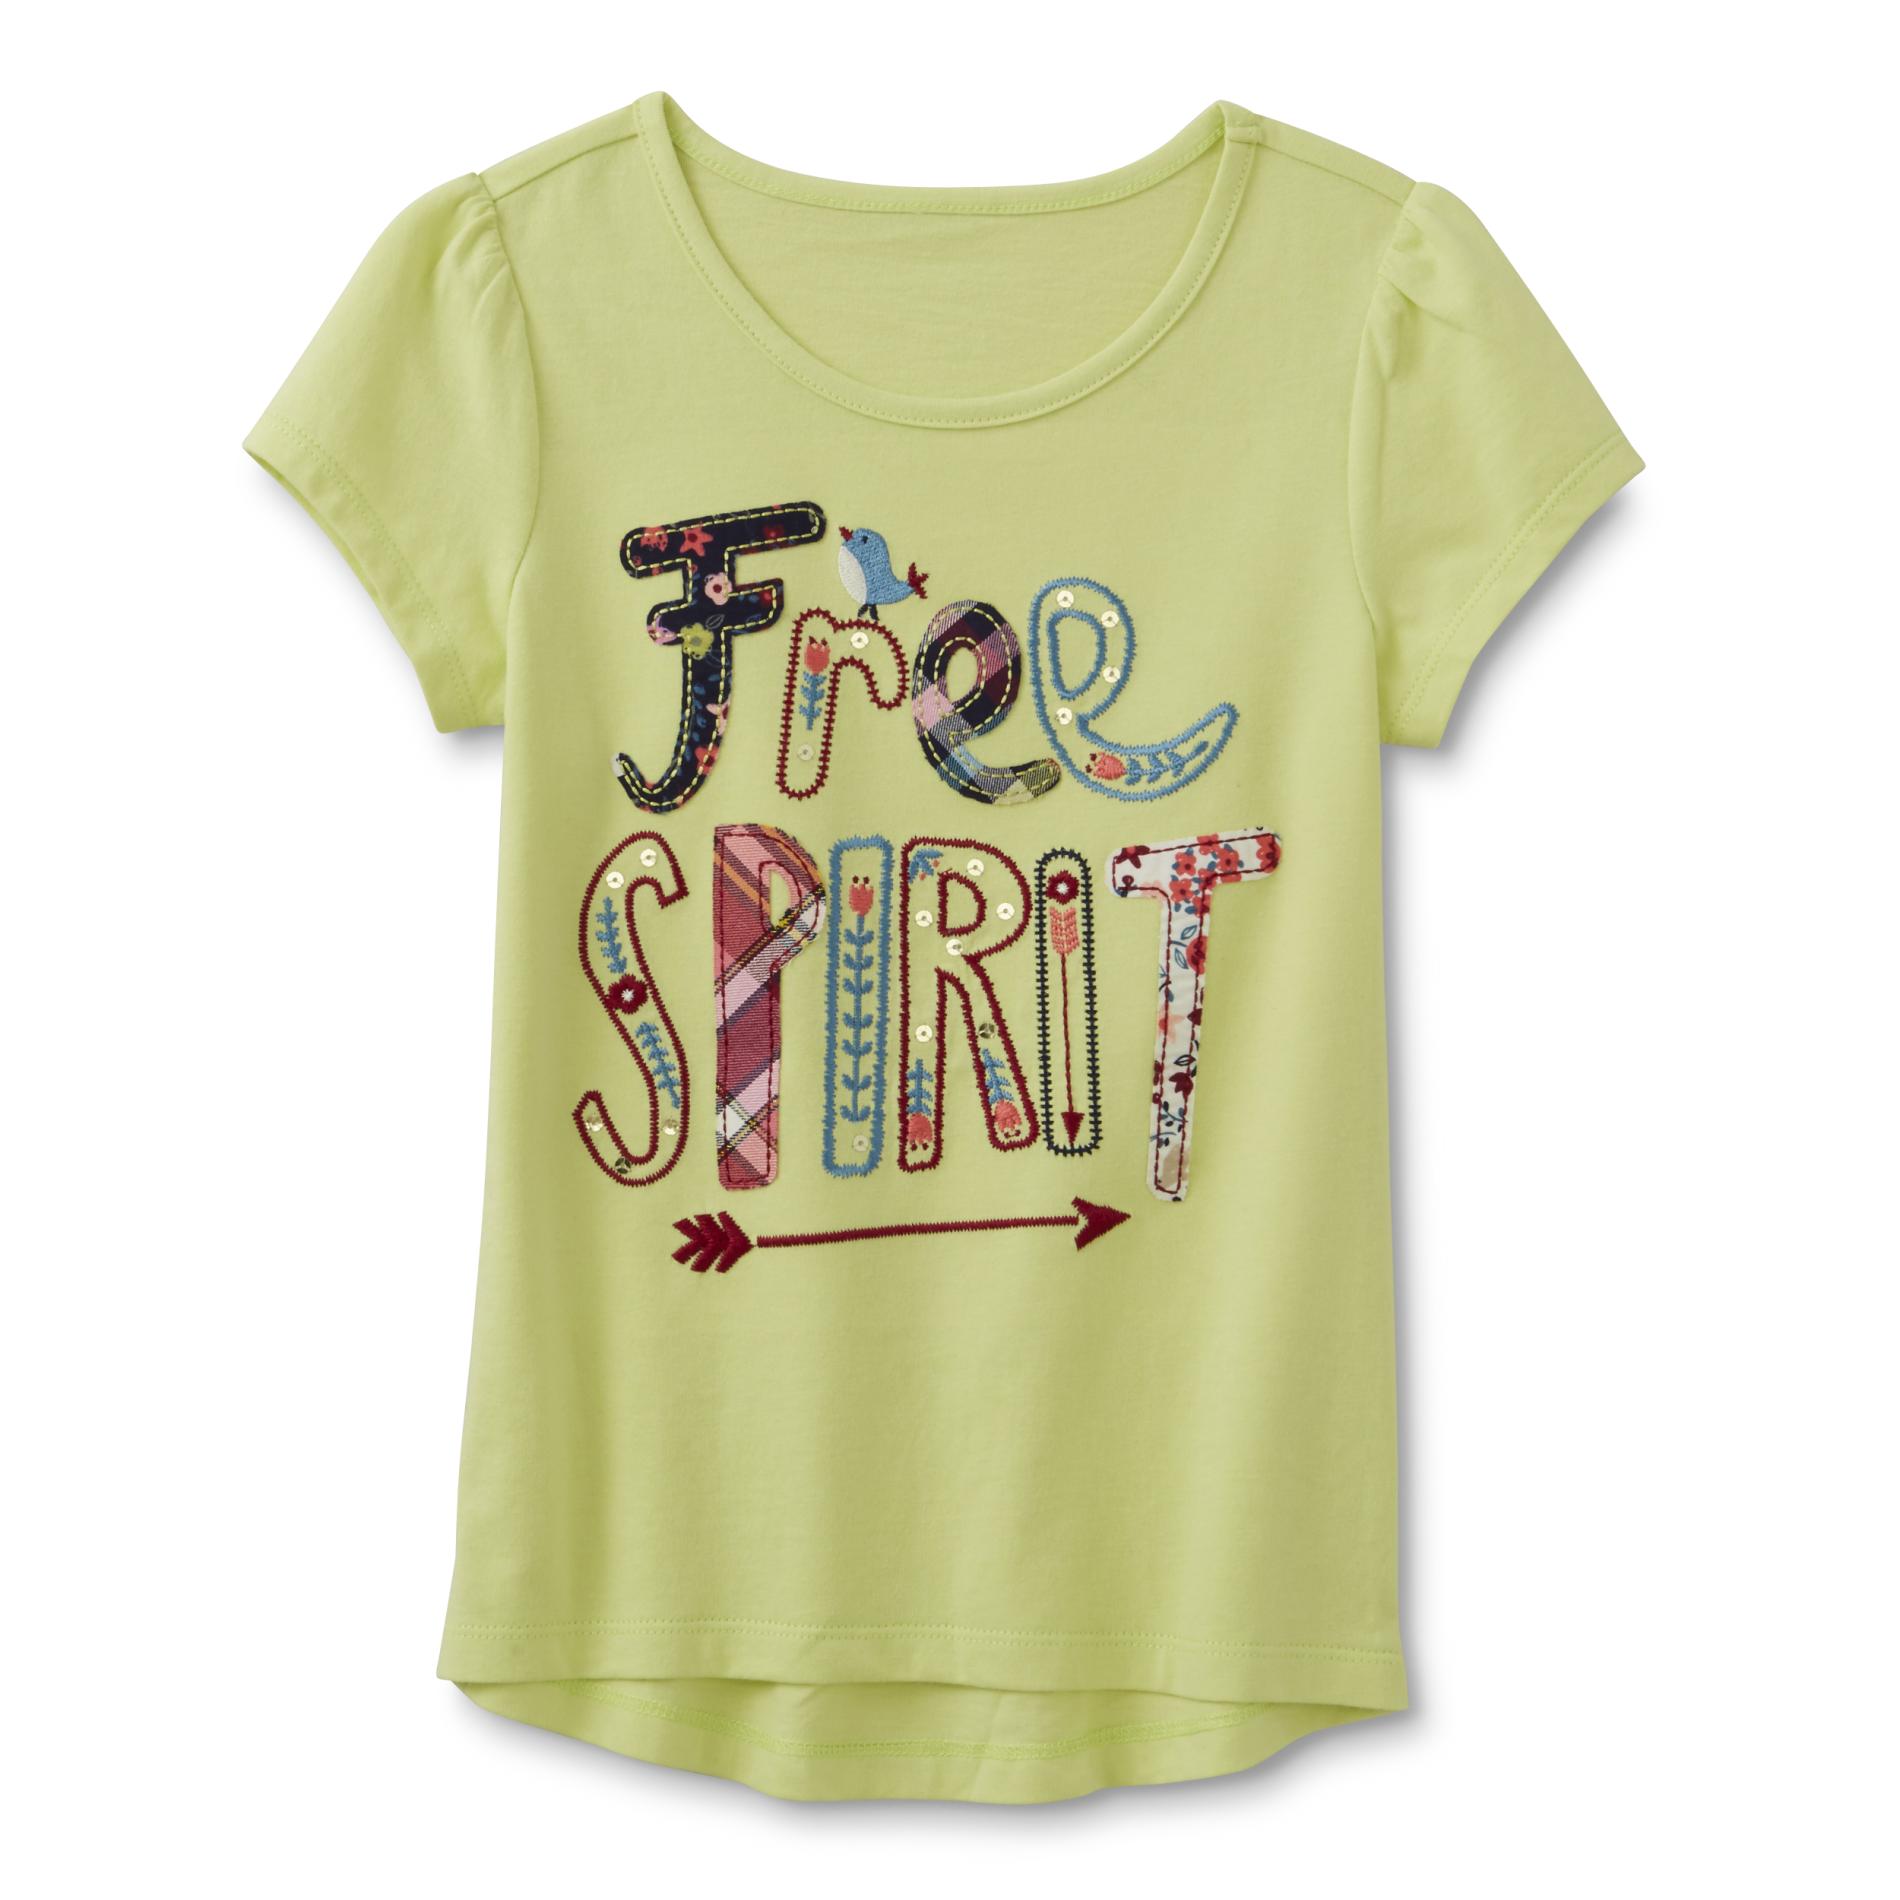 Toughskins Girl's Embellished T-Shirt - Free Spirit